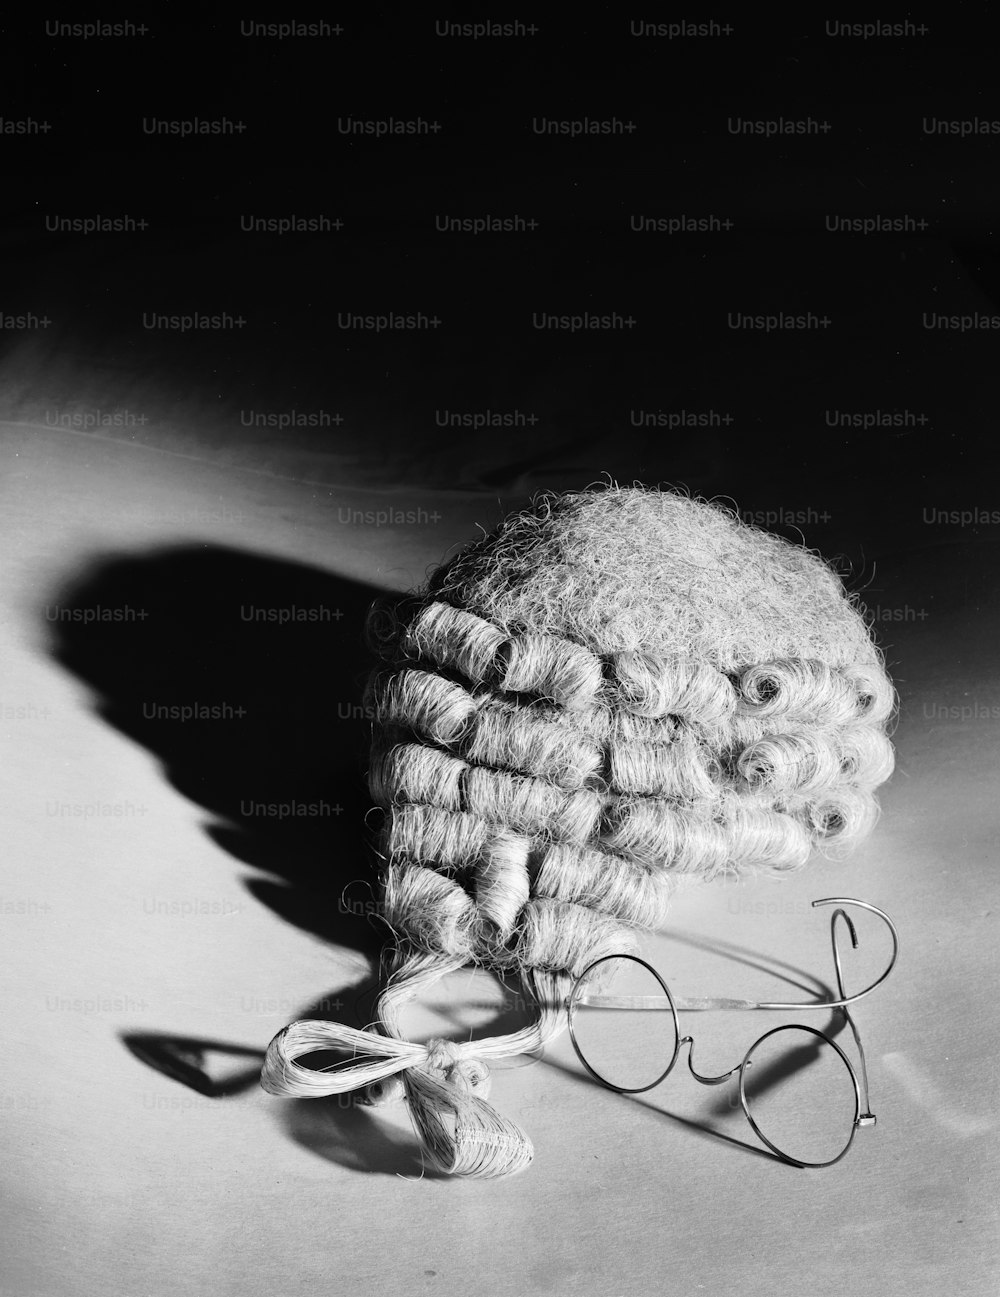 1962년 8월 31일: 변호사의 가발과 강철 테두리 안경.  (사진: 샬로너 우즈/게티 이미지)